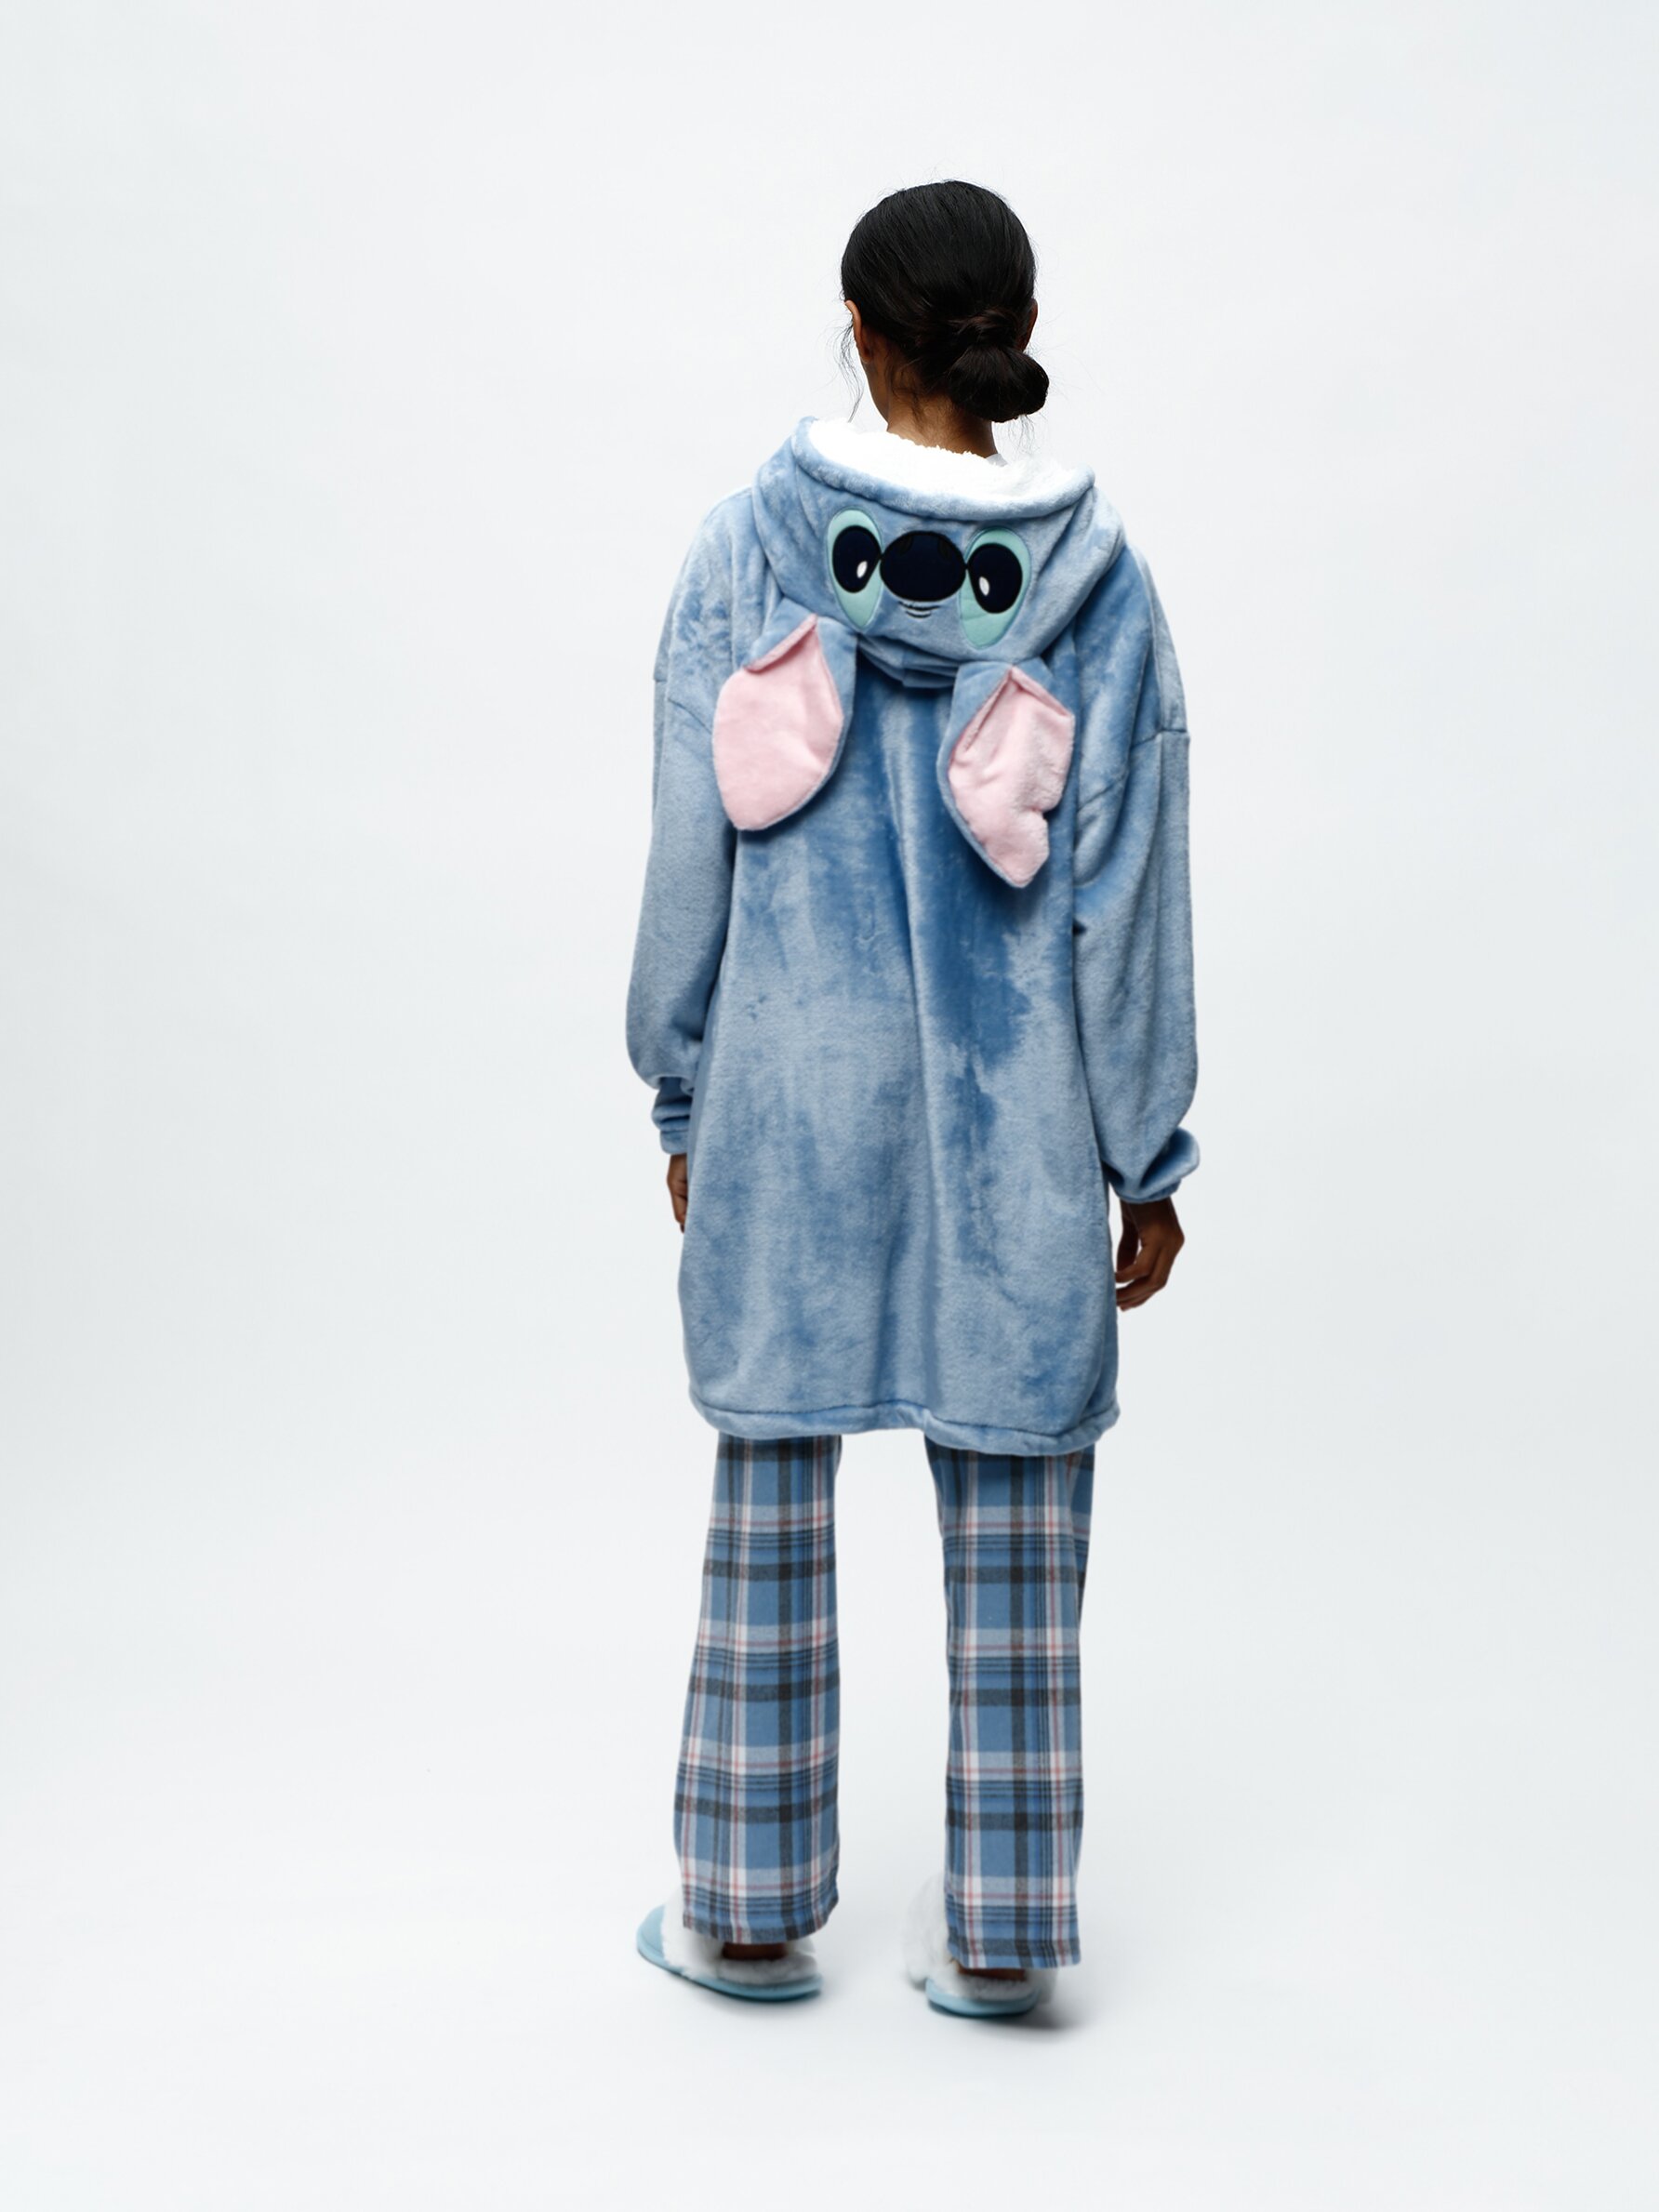 Lilo & Stitch © Disney blanket-style pyjamas